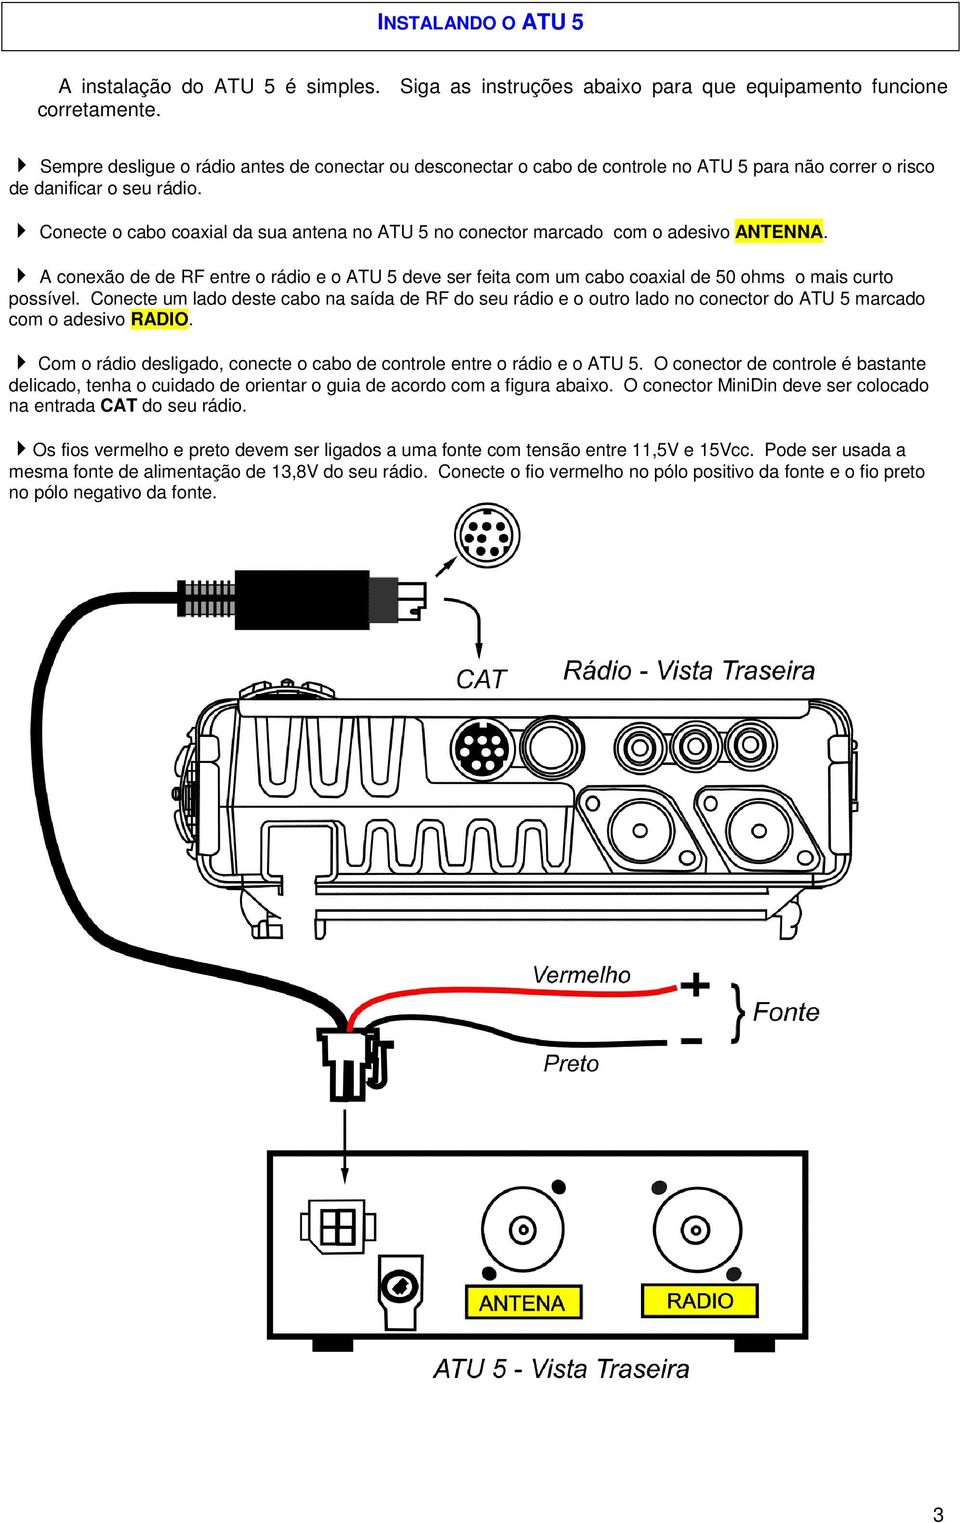 Conecte o cabo coaxial da sua antena no ATU 5 no conector marcado com o adesivo ANTENNA. A conexão de de RF entre o rádio e o ATU 5 deve ser feita com um cabo coaxial de 50 ohms o mais curto possível.